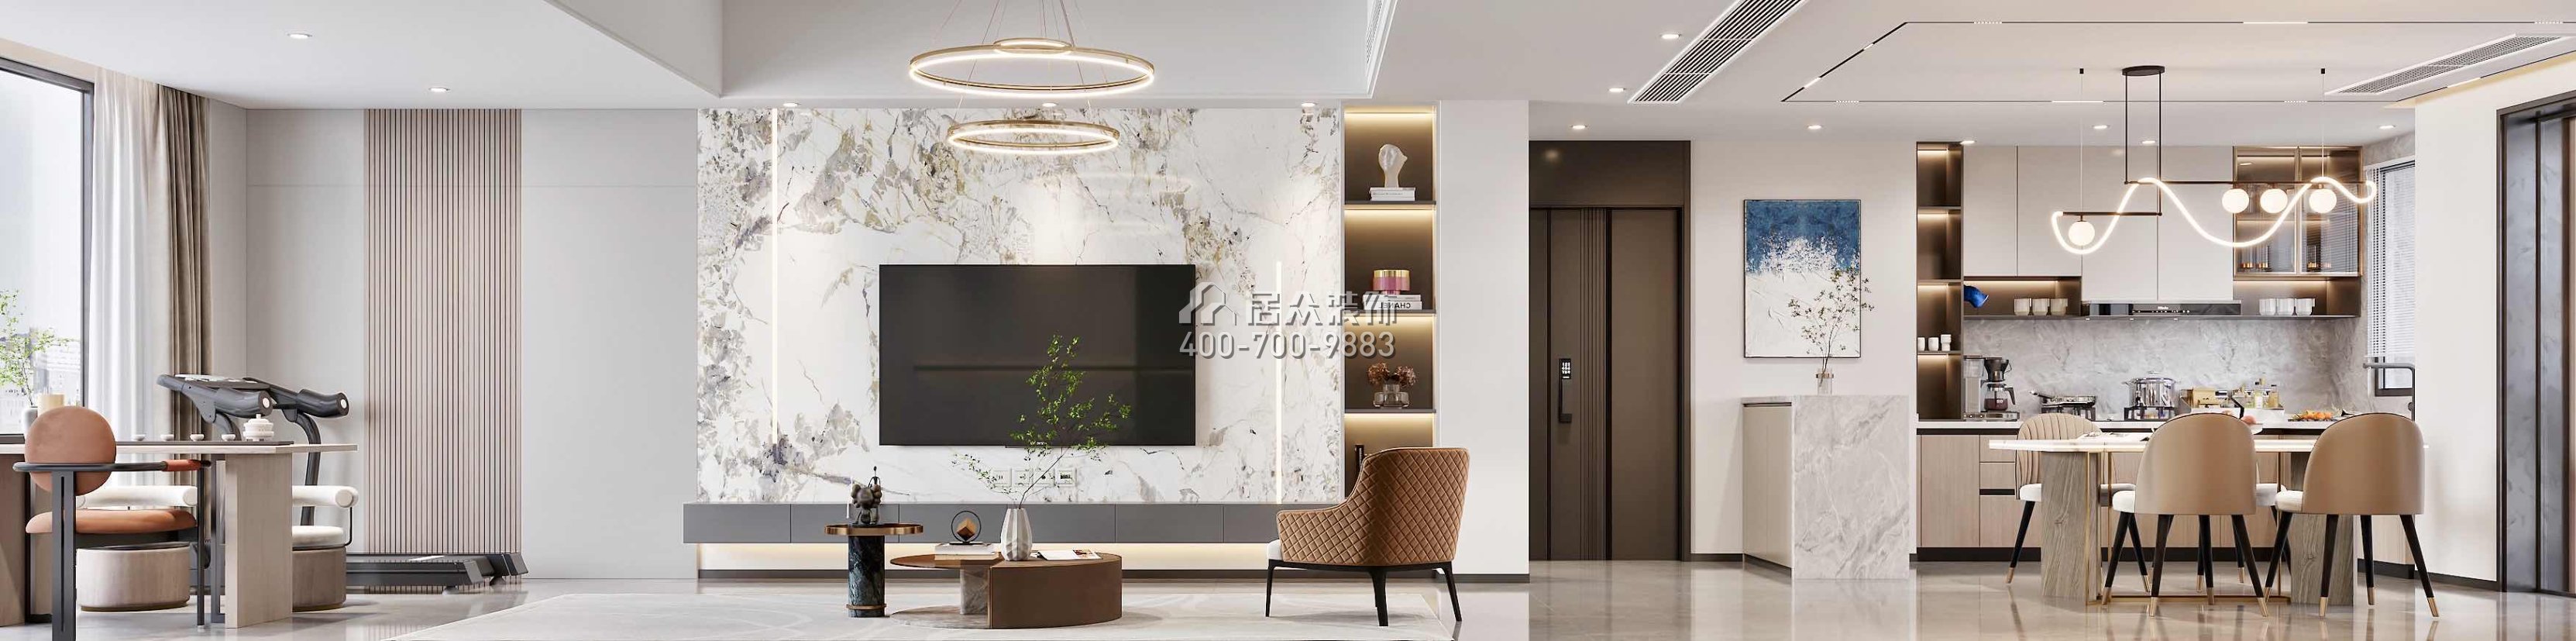 翠湖香山150平方米现代简约风格平层户型客厅装修效果图